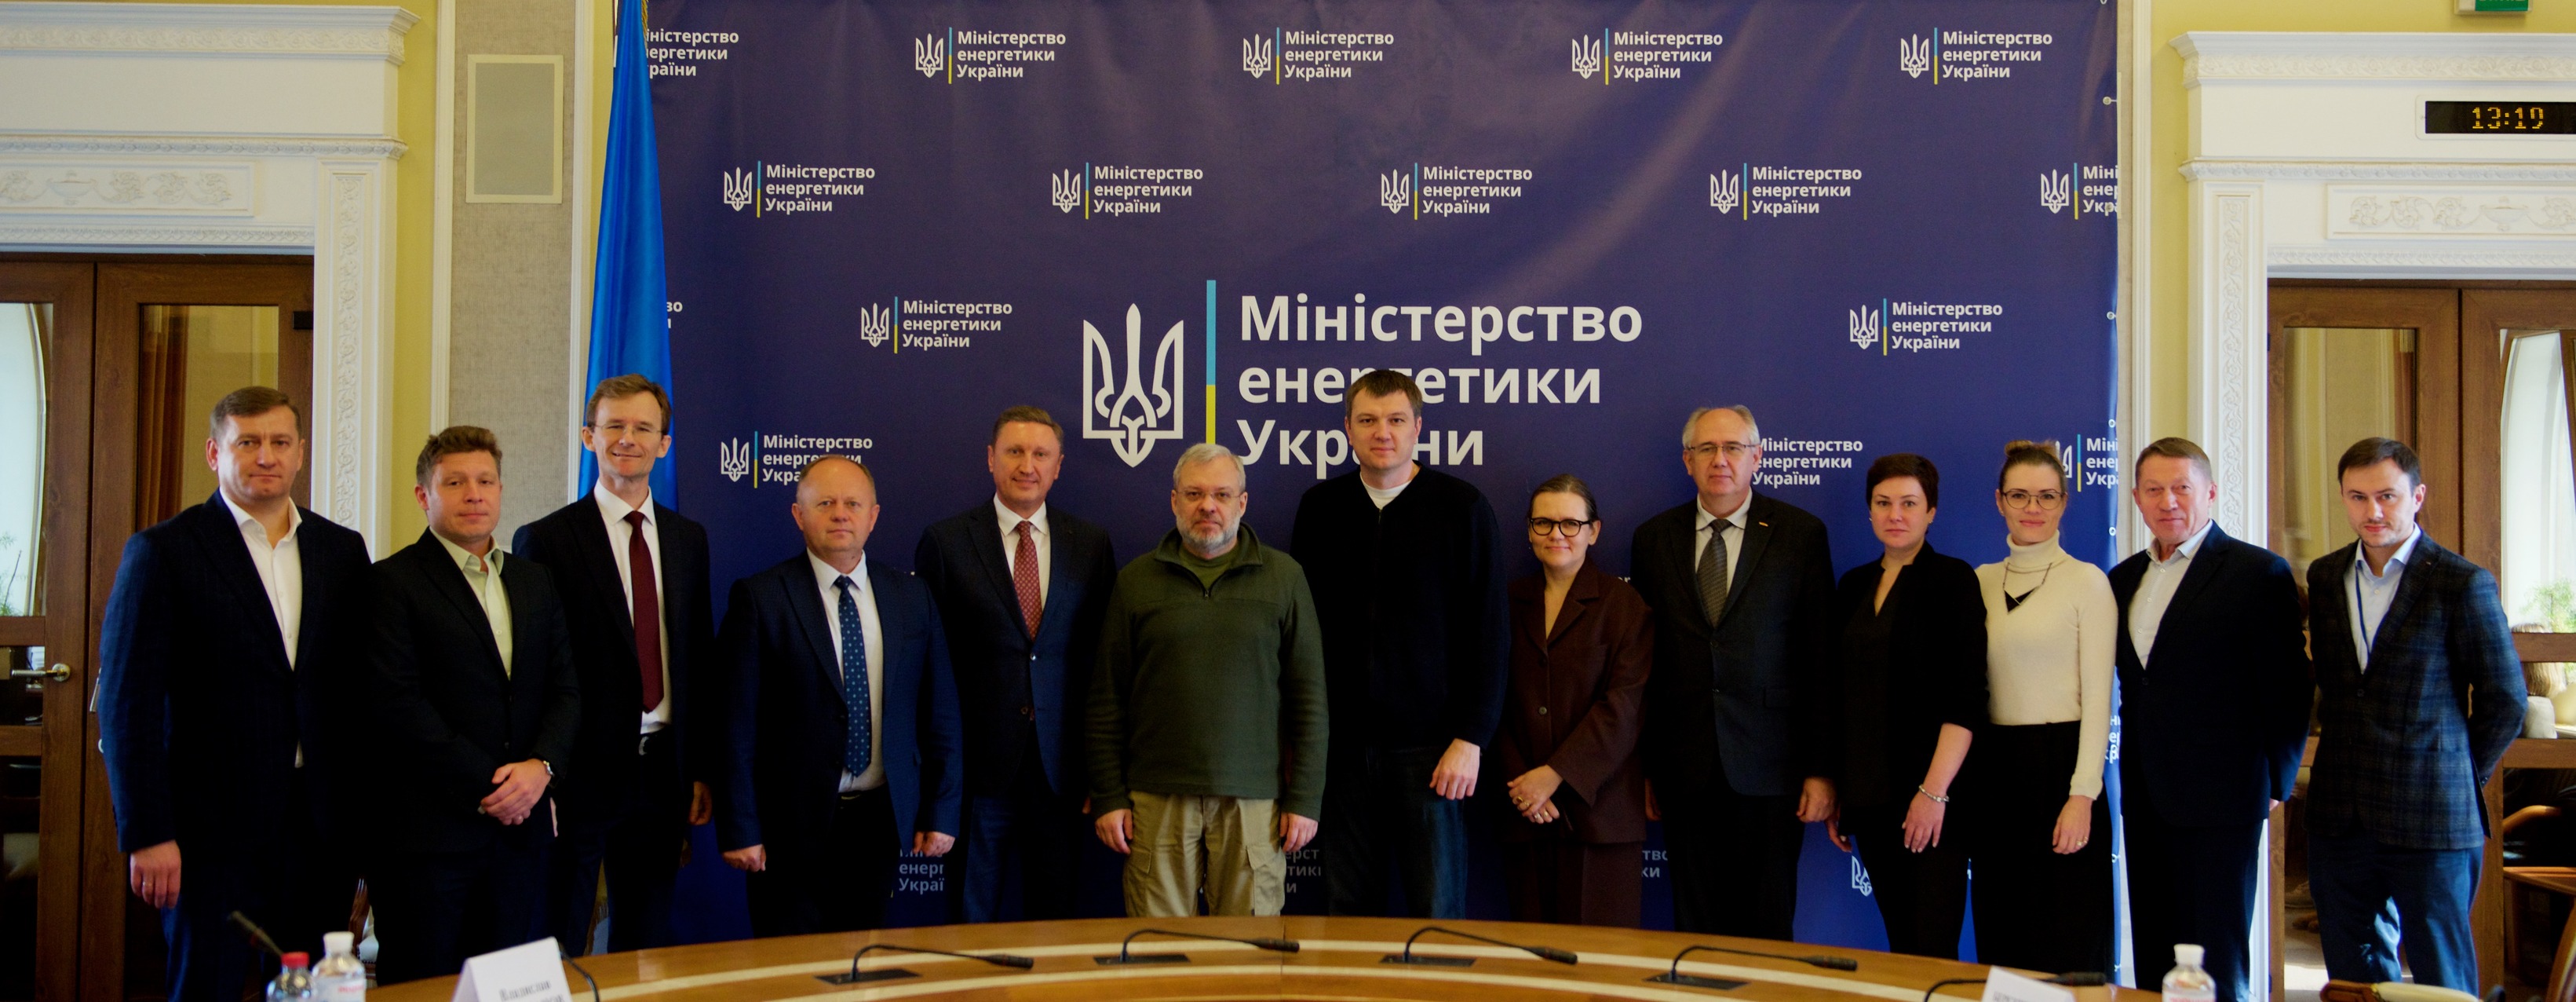 Політехніка підписала тристоронній Меморандум про співпрацю з Міненерго, МОН та НАК «Нафтогаз України»